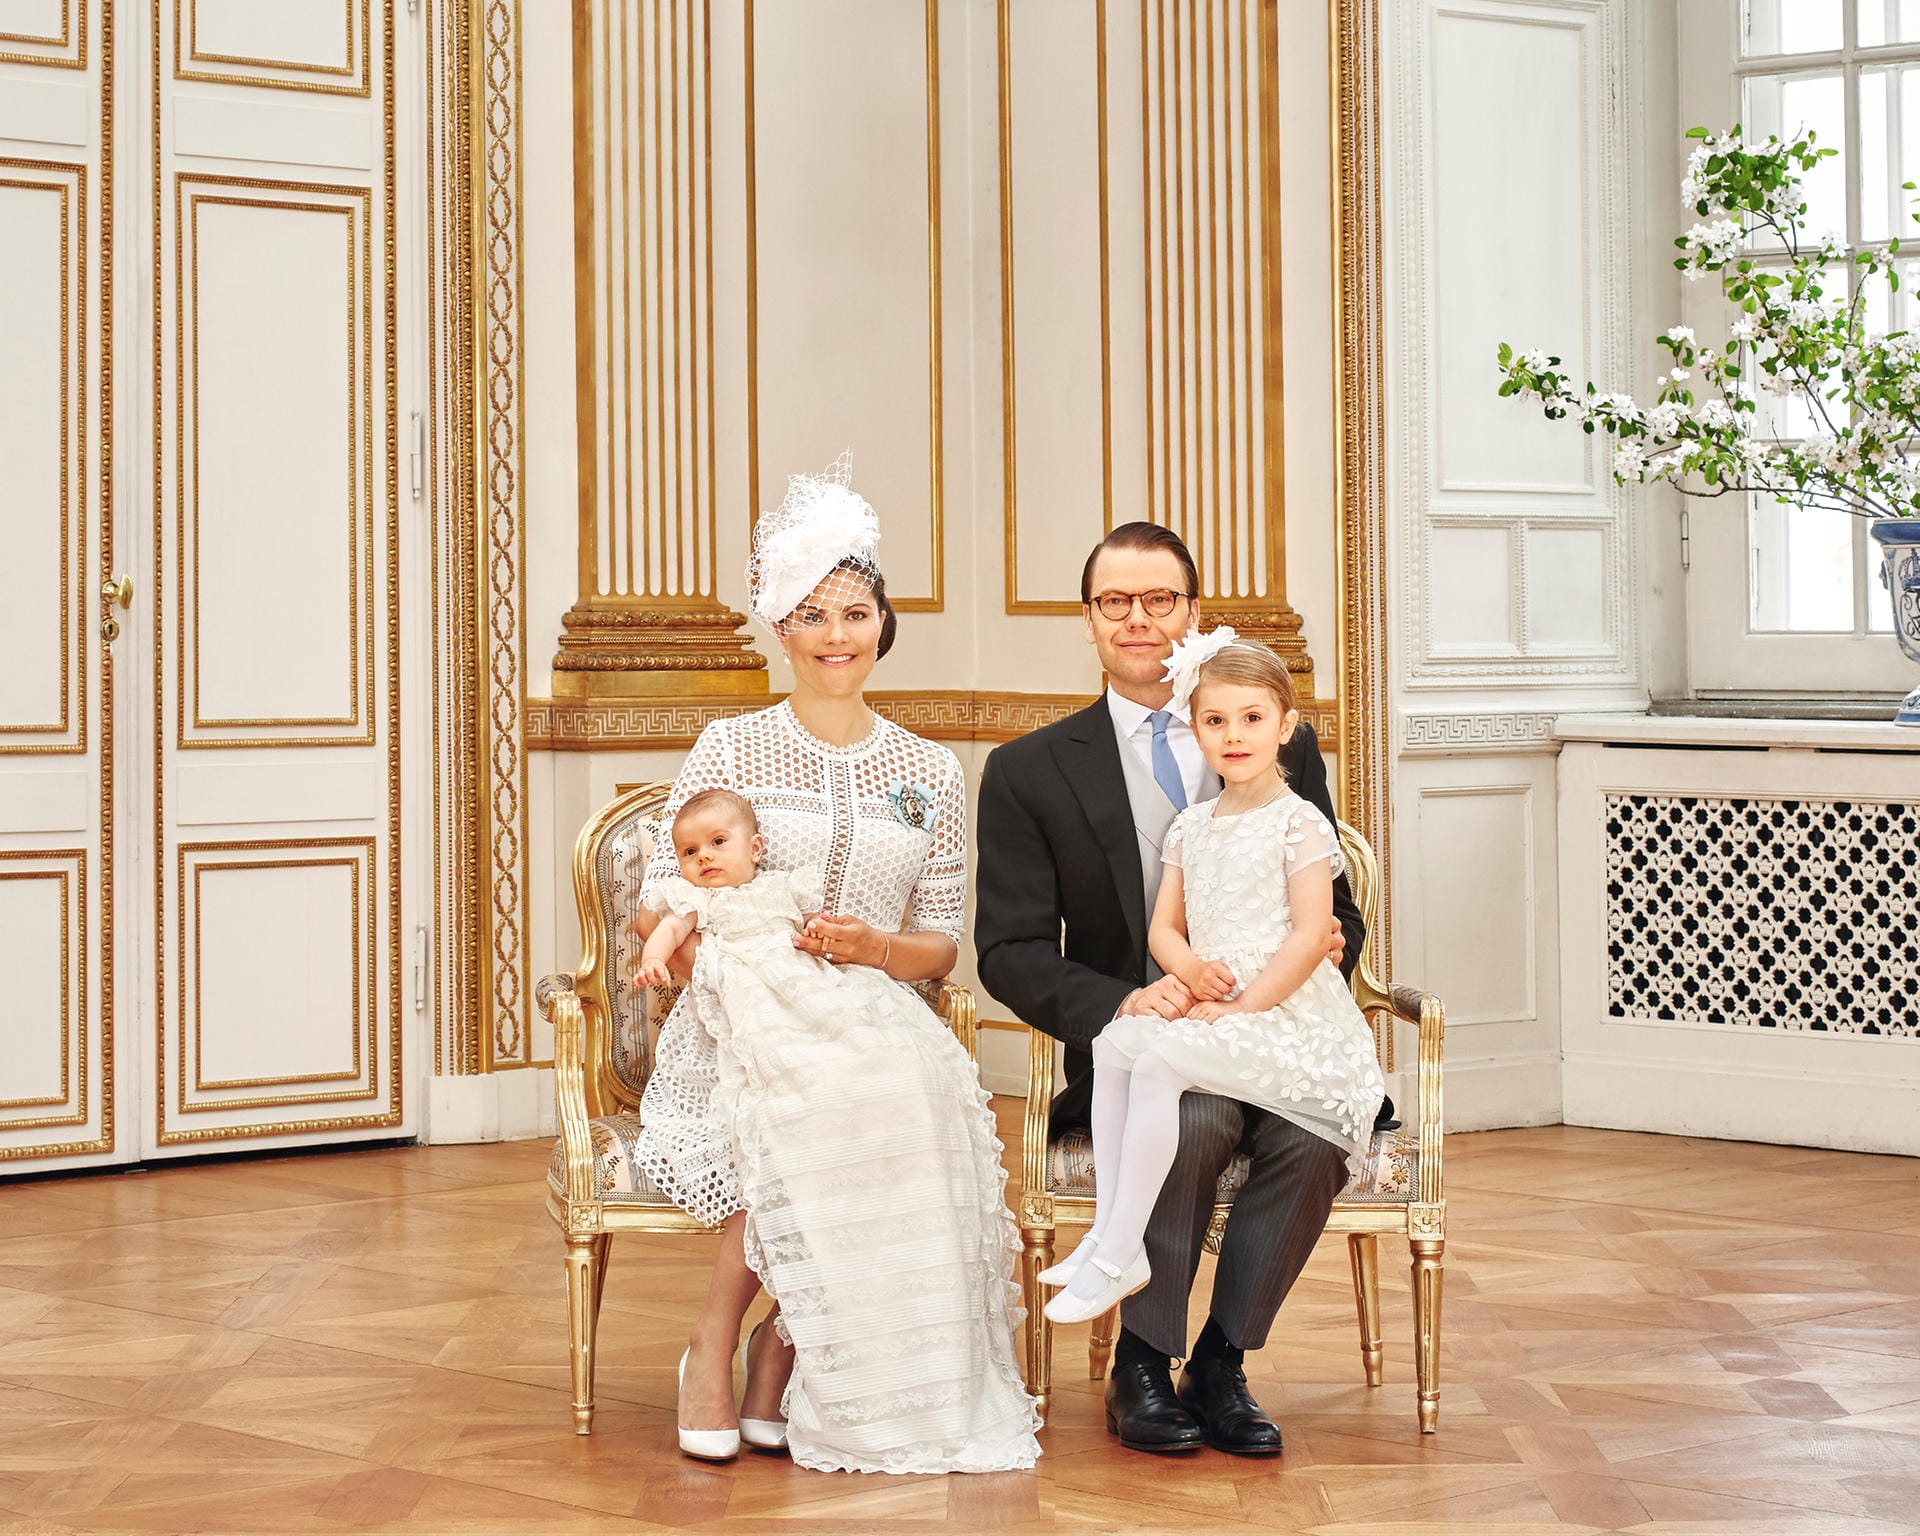 Am 27. Mai 2016 wurde Prinz Oscar getauft. Das ist das offizielle Bild der Familie zu dem großen Tag des kleinen Prinzen.